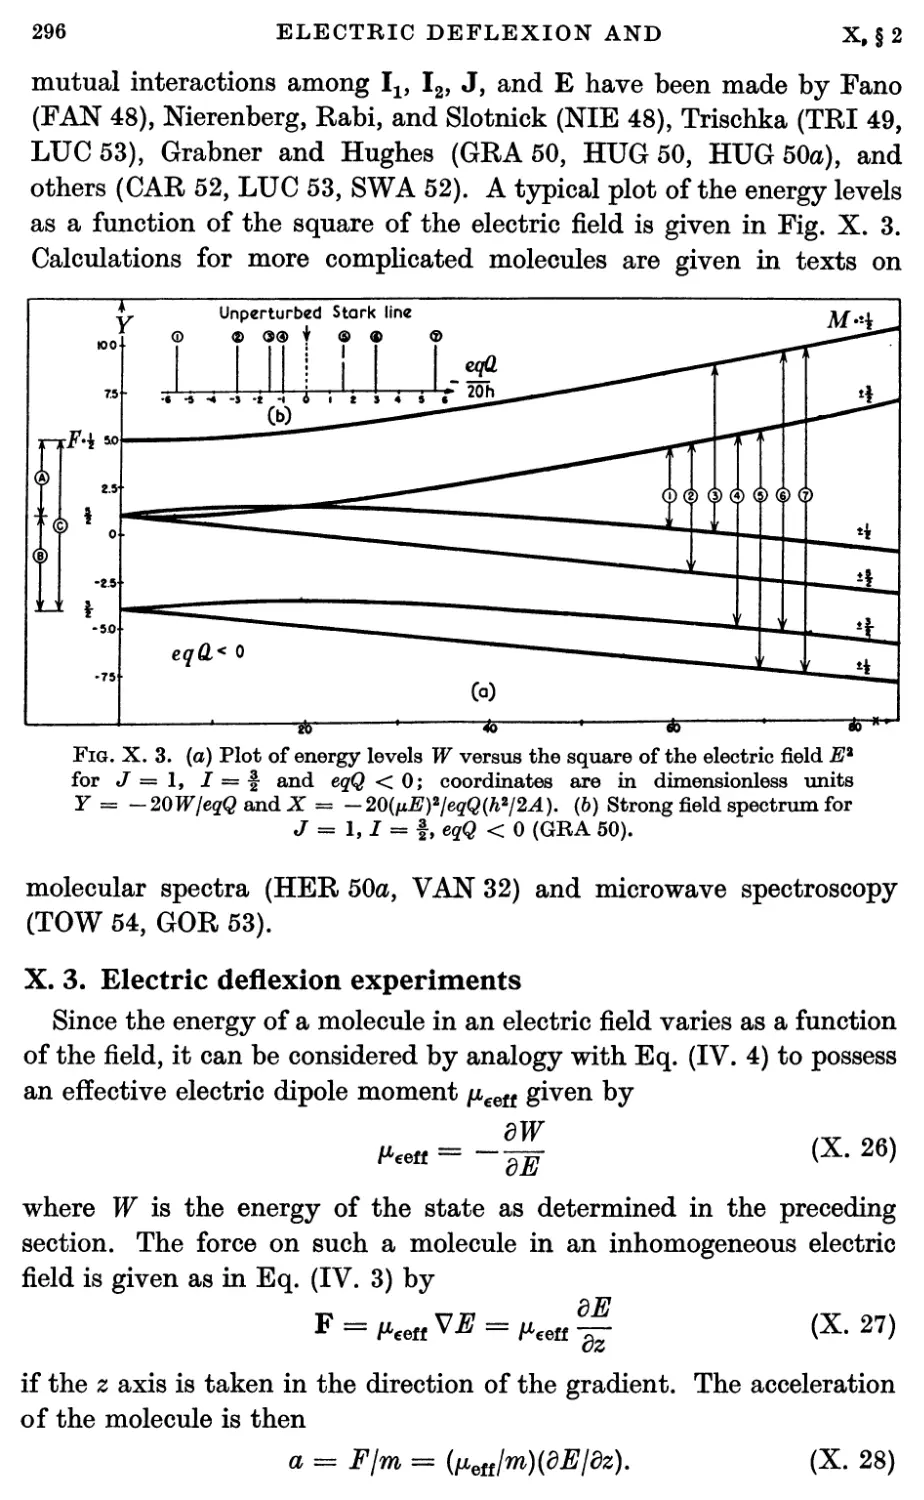 X.3. Electric Deflexion Experiments